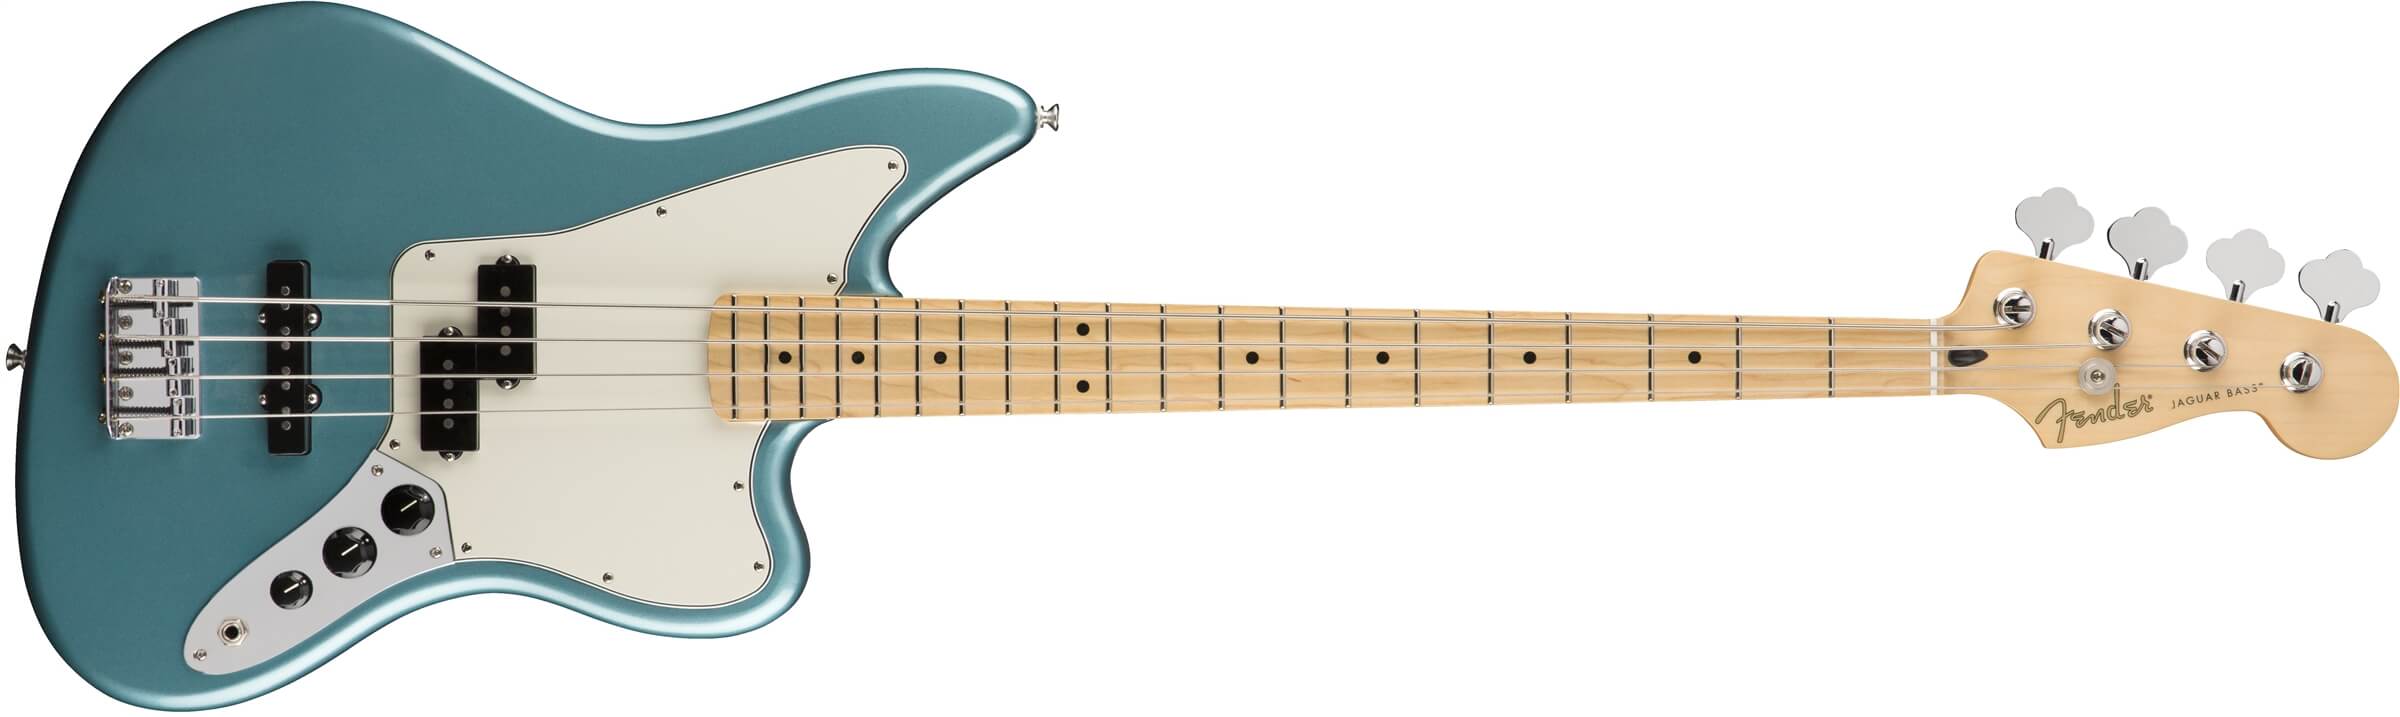 Fender Player Jaguar Bass Review